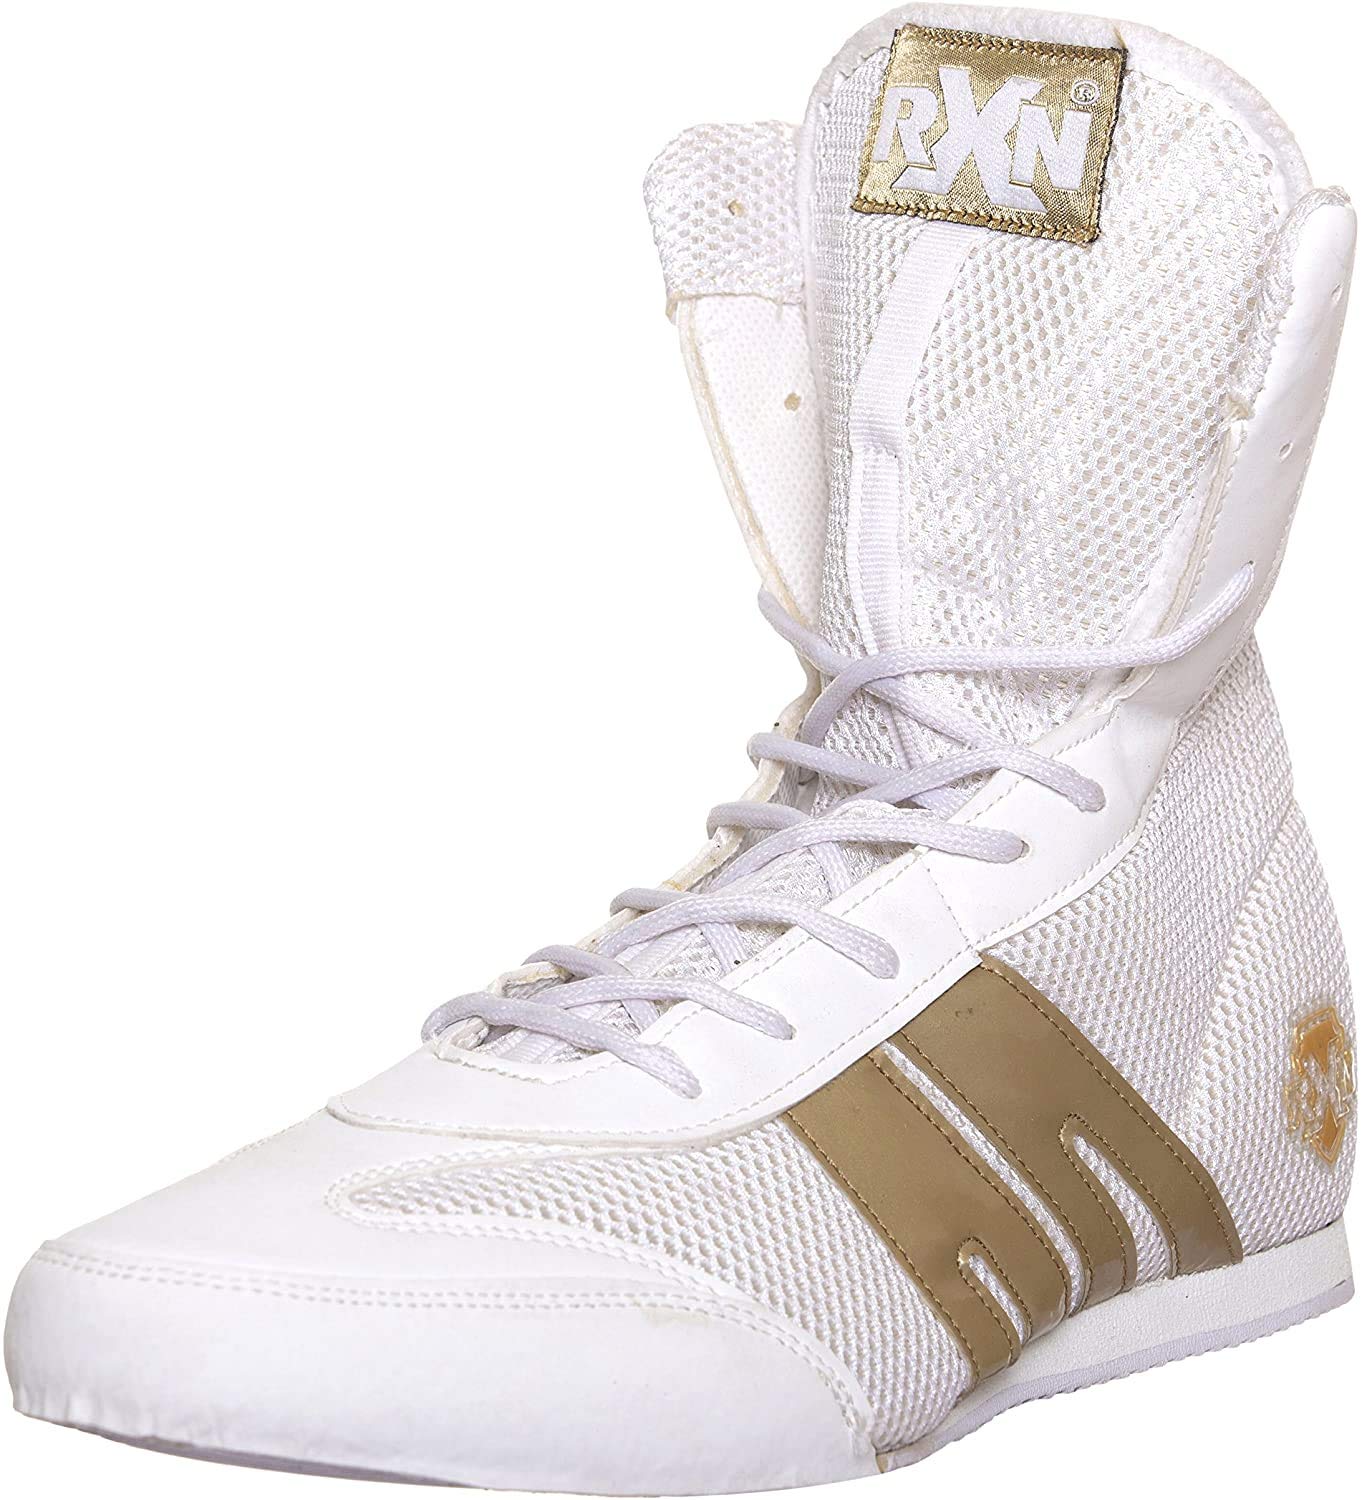 RXN BX-12 White/Gold Boxing Shoe